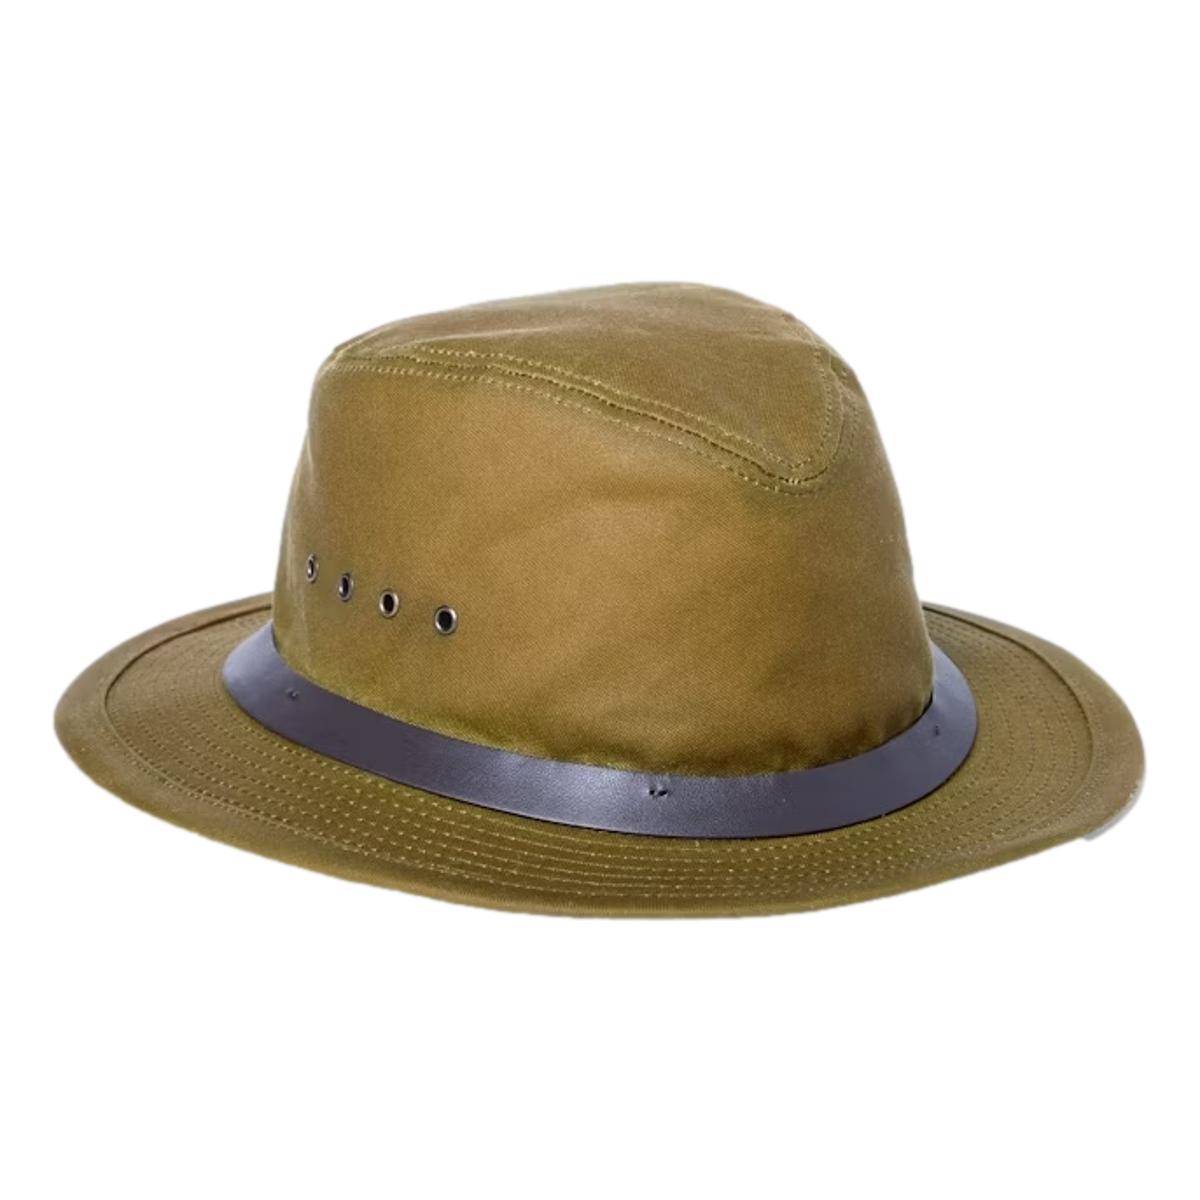 Tin Cloth Packer Hat Dark Tan - Hat